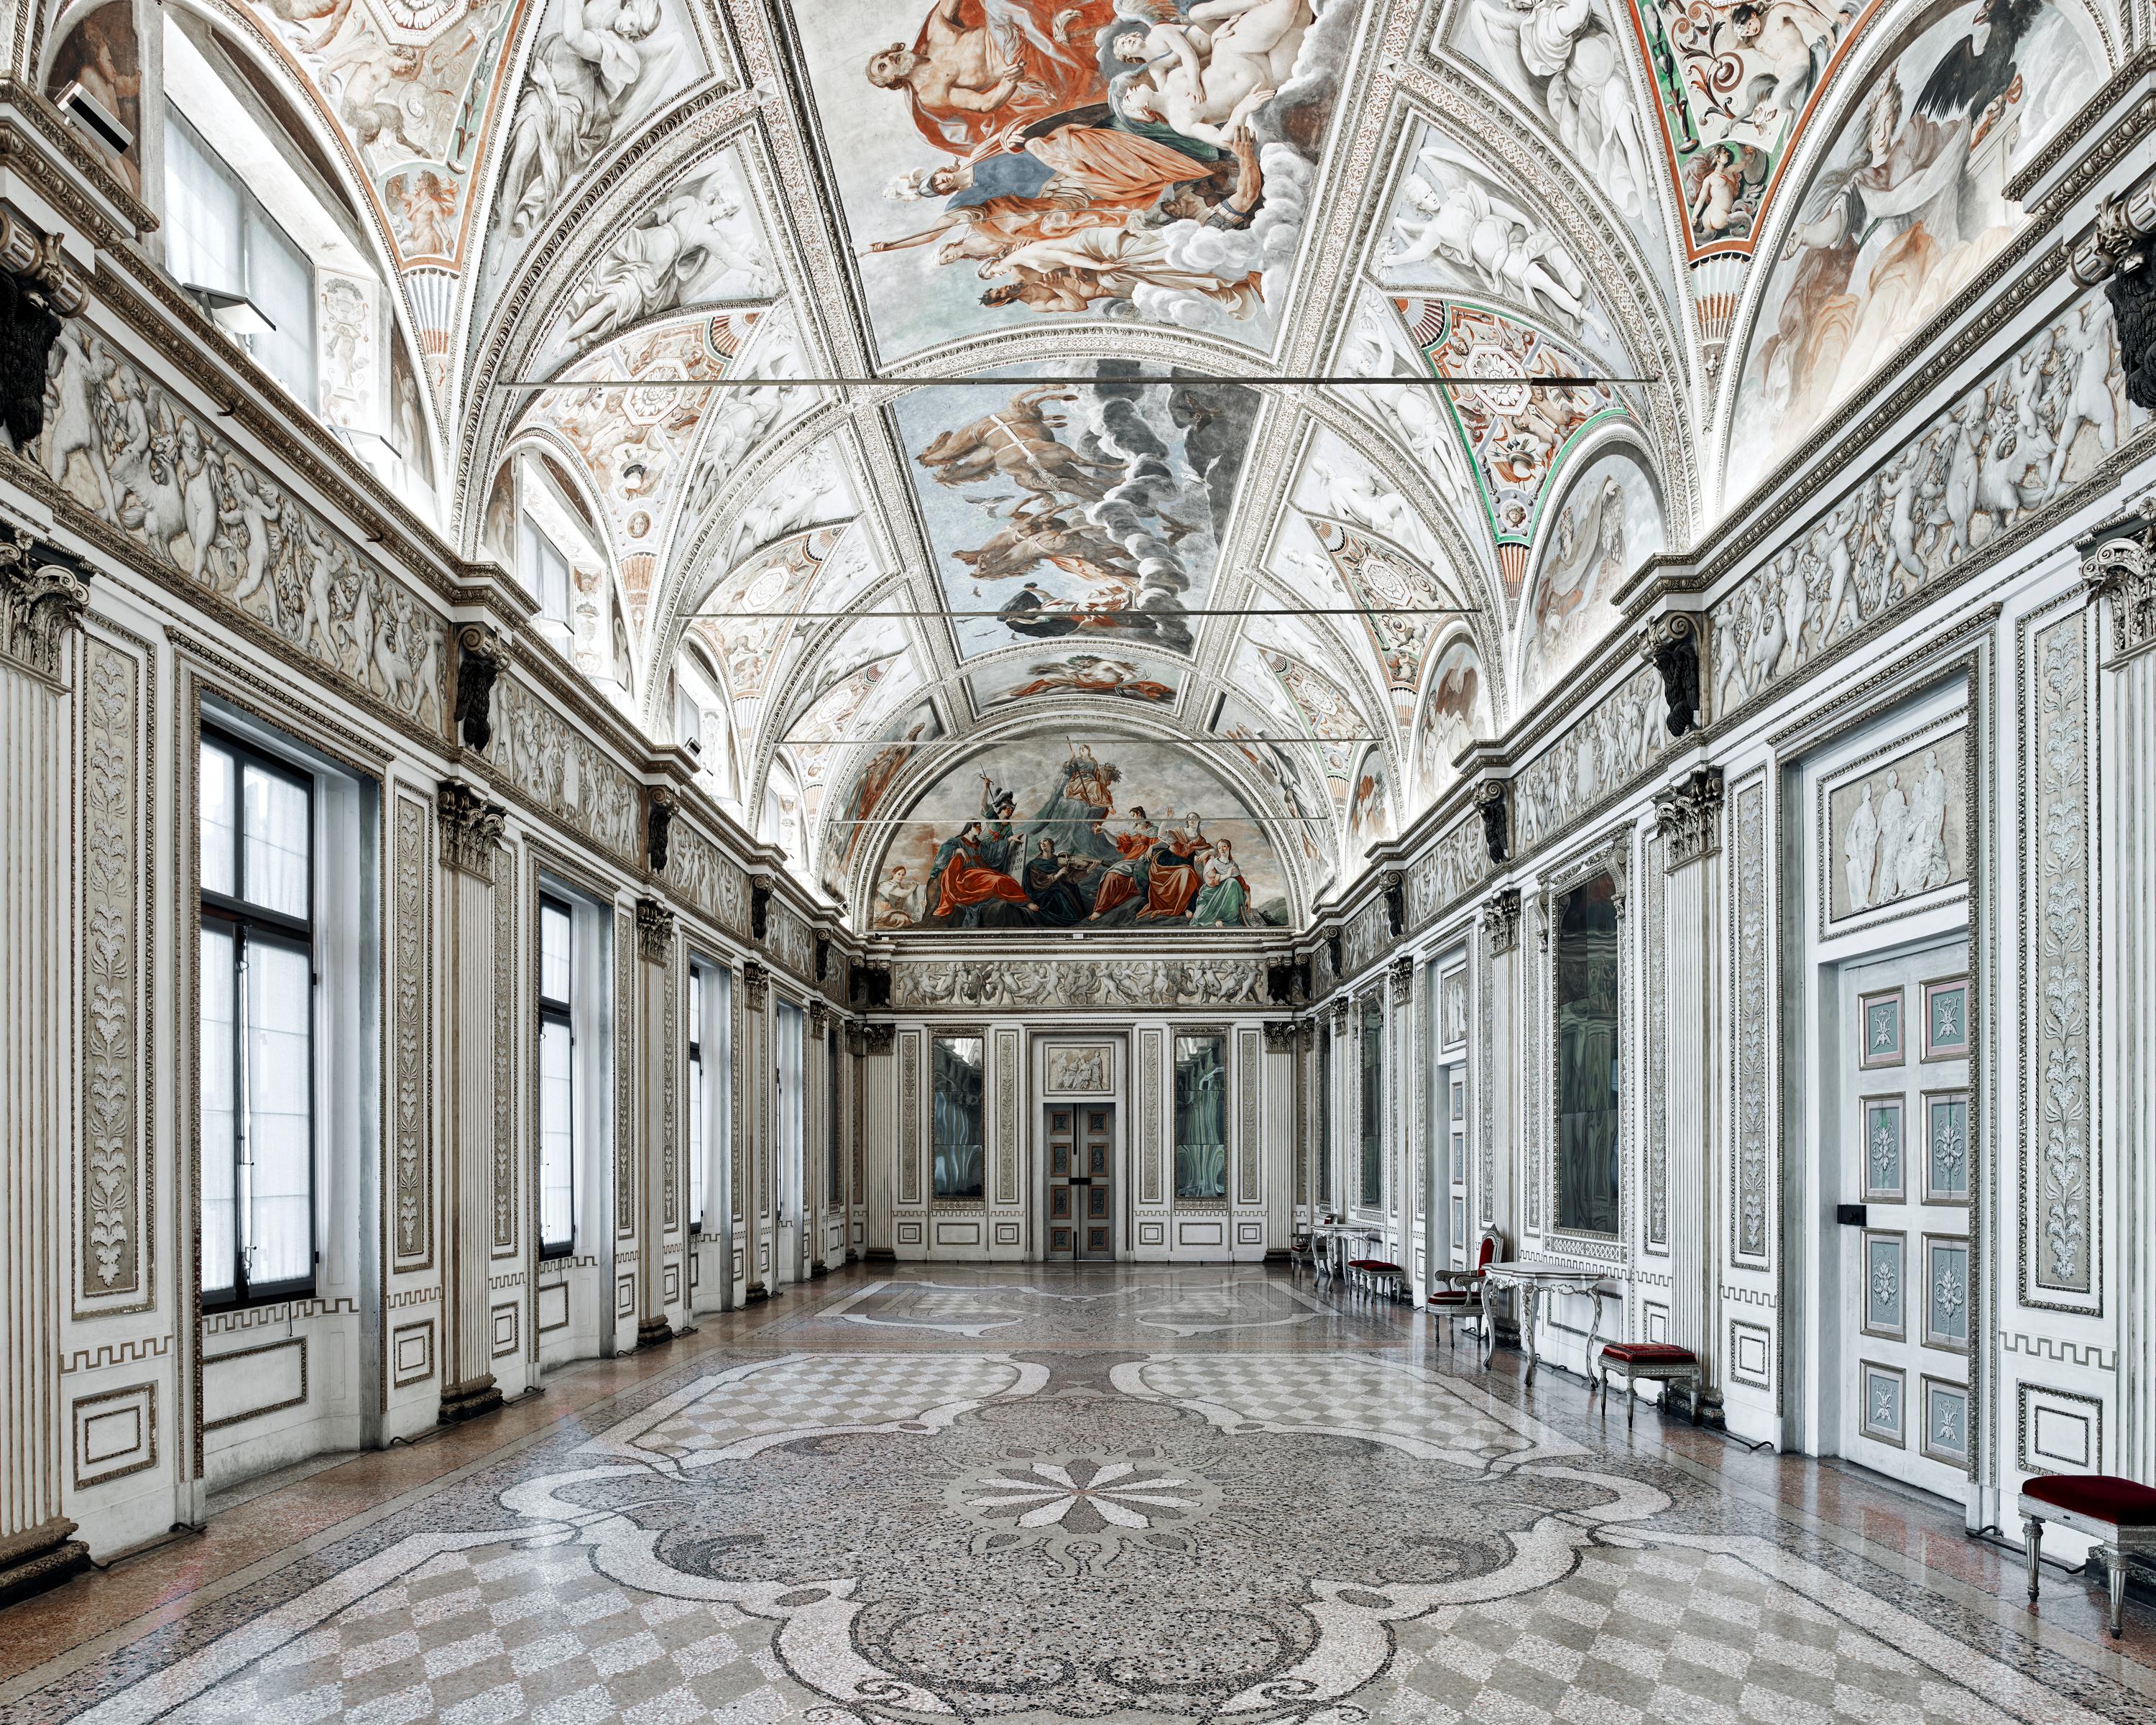 Palazzo Ducall, Mantova, Italy (21” x 26”)